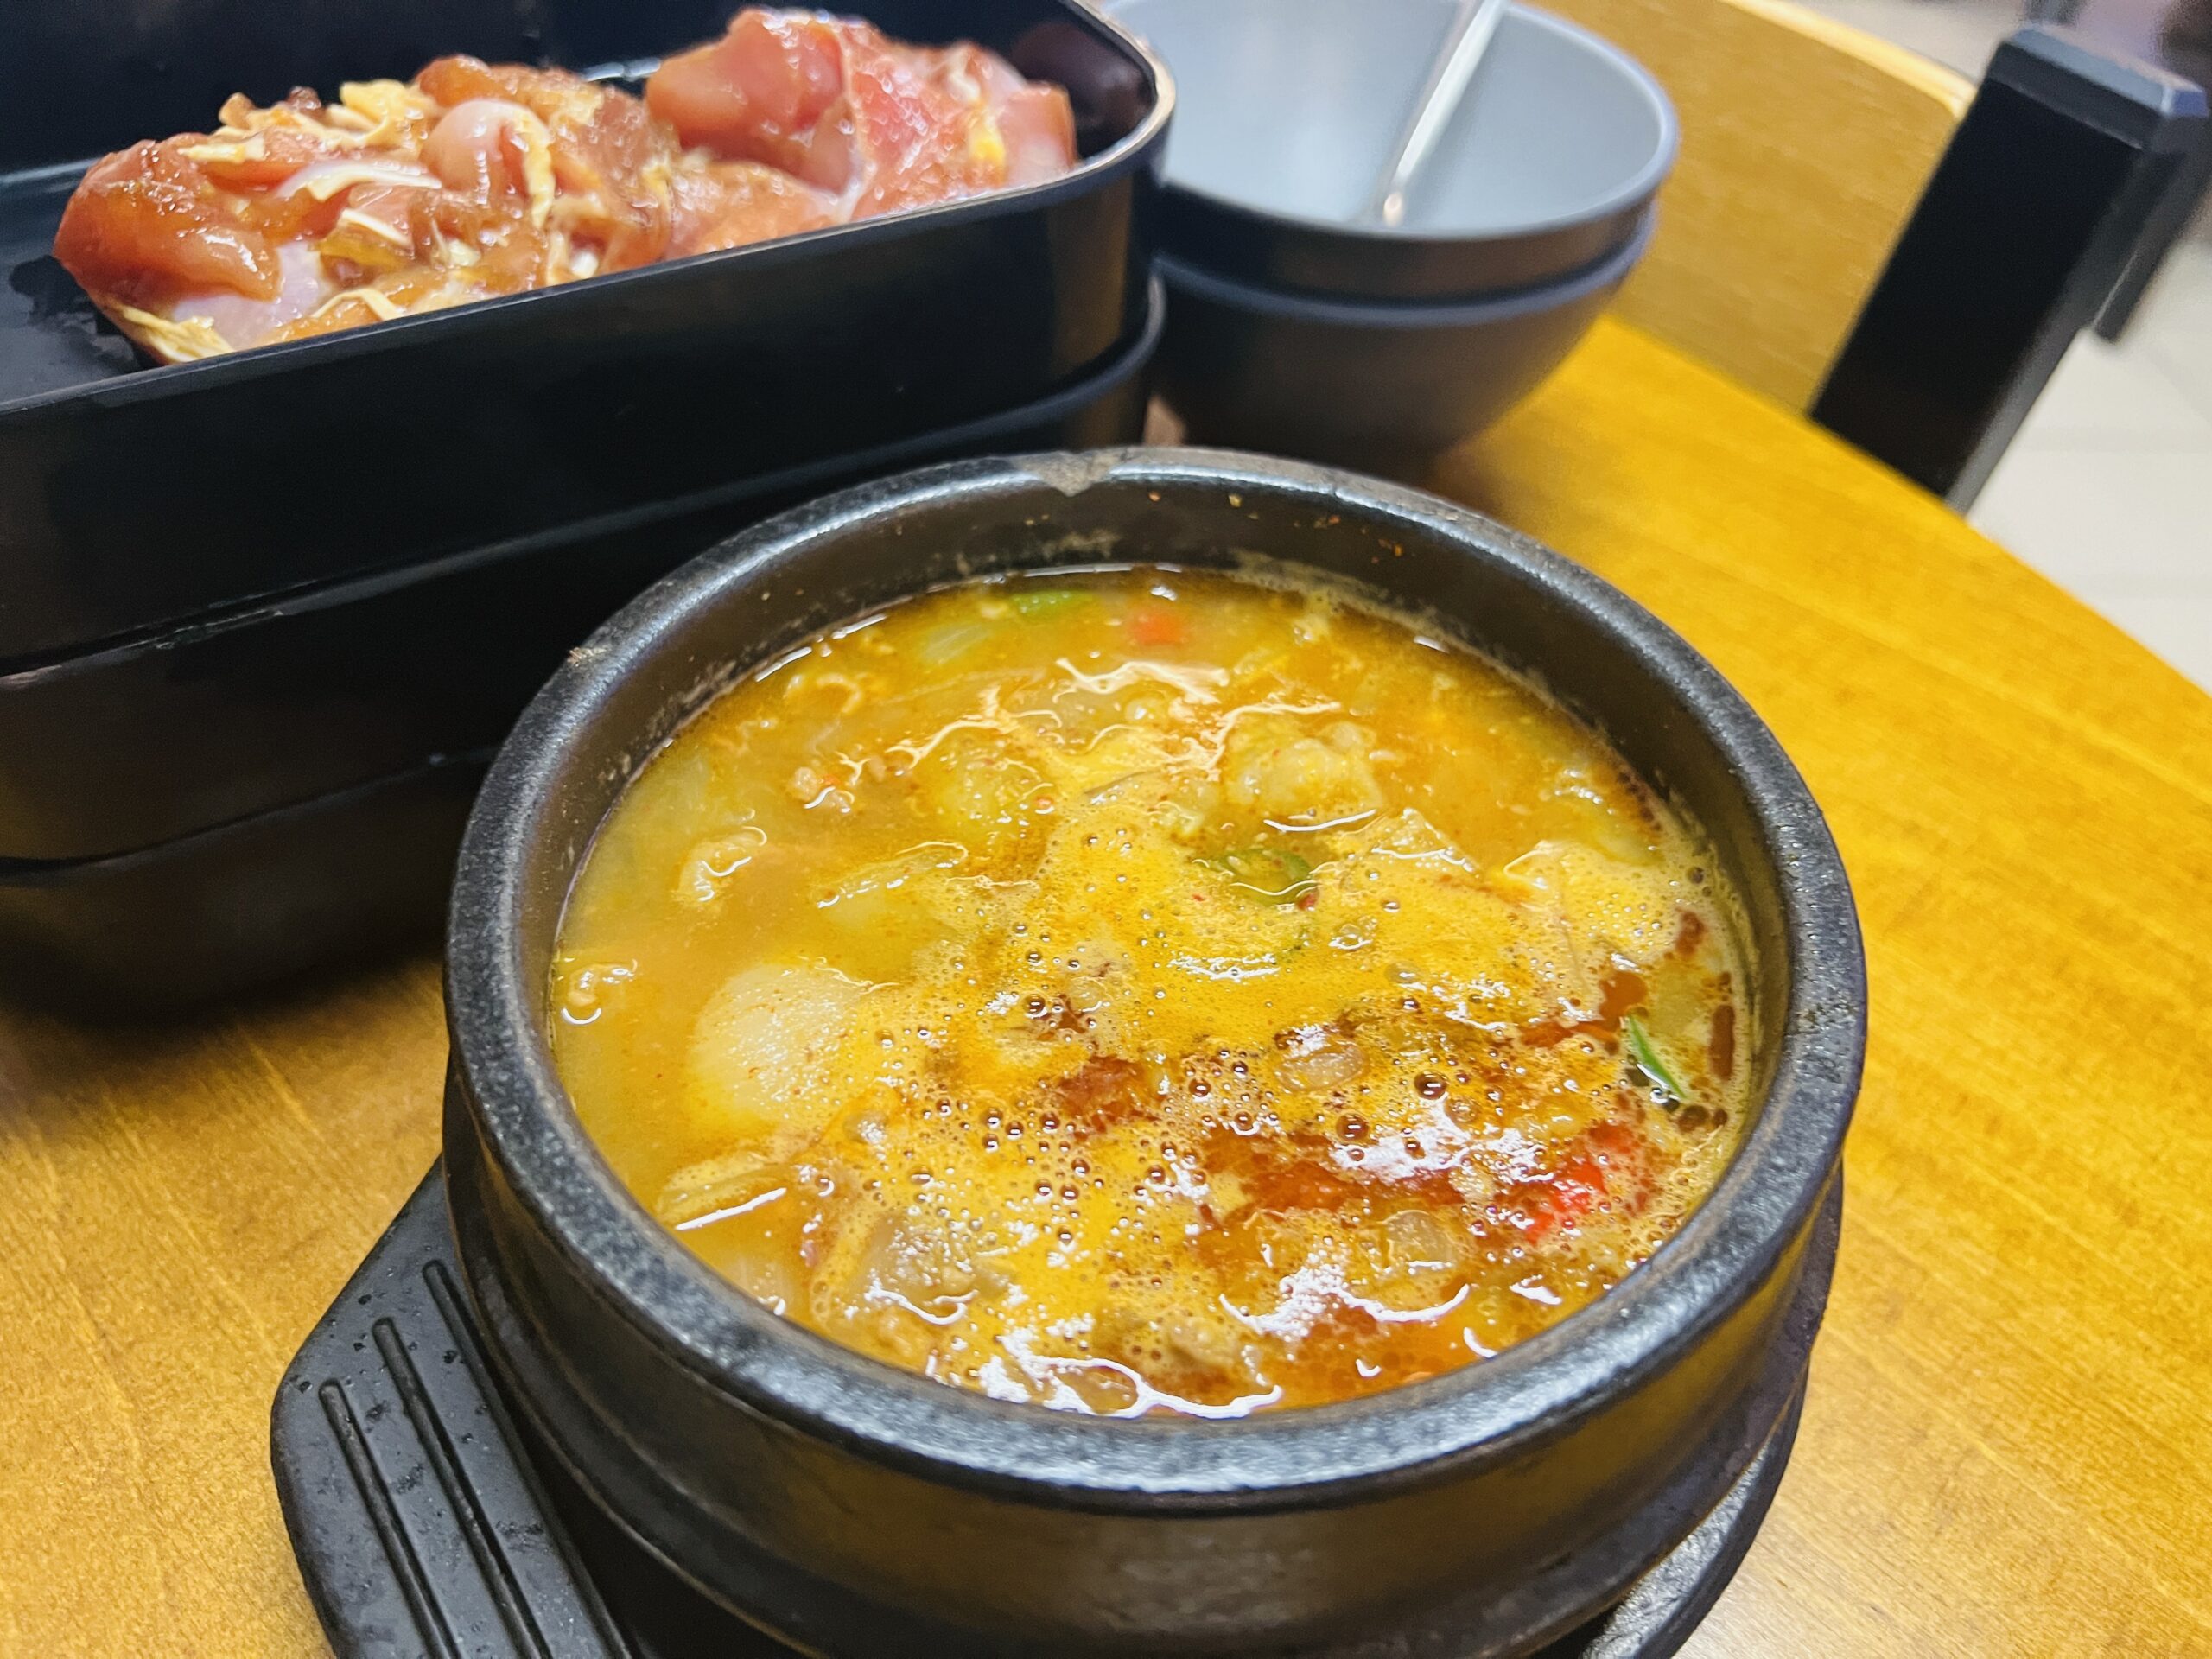 Ssak3 Korean BBQ & Bistro - Beef Brisket Beanpaste Stew